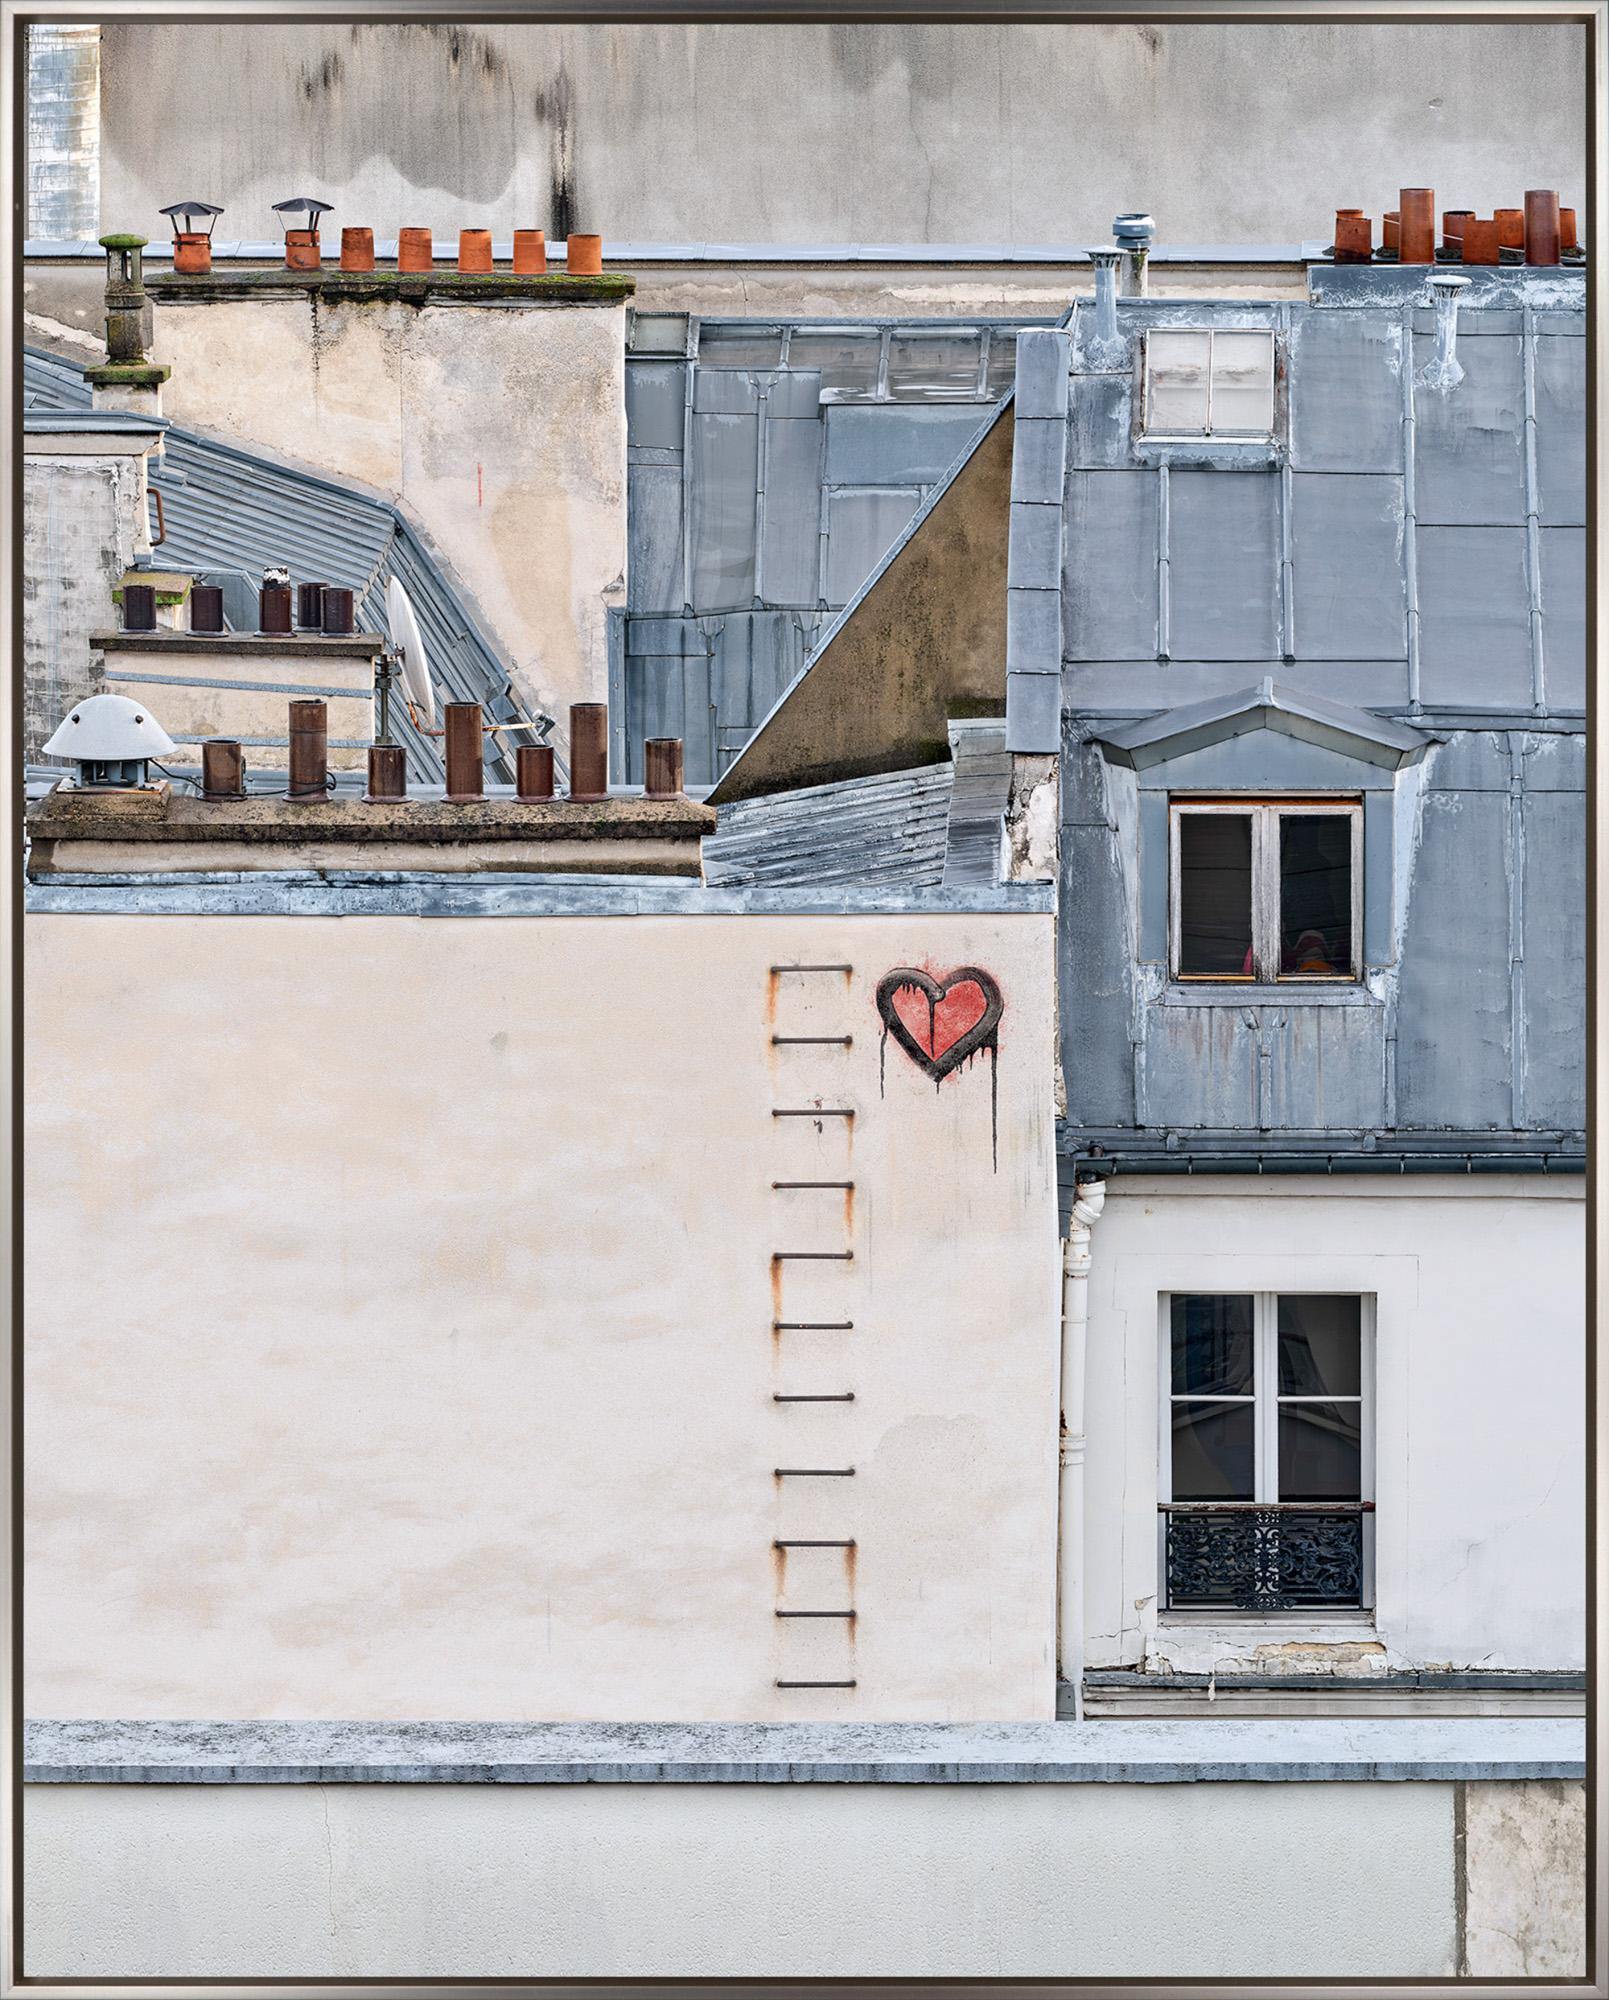 "Amore, Paris, France" est une photographie encadrée (tirage de qualité archive) sur aluminium de David Burdeny, représentant des bâtiments de Paris avec un symbole de cœur graffité à la bombe près du centre de la composition. L'architecture